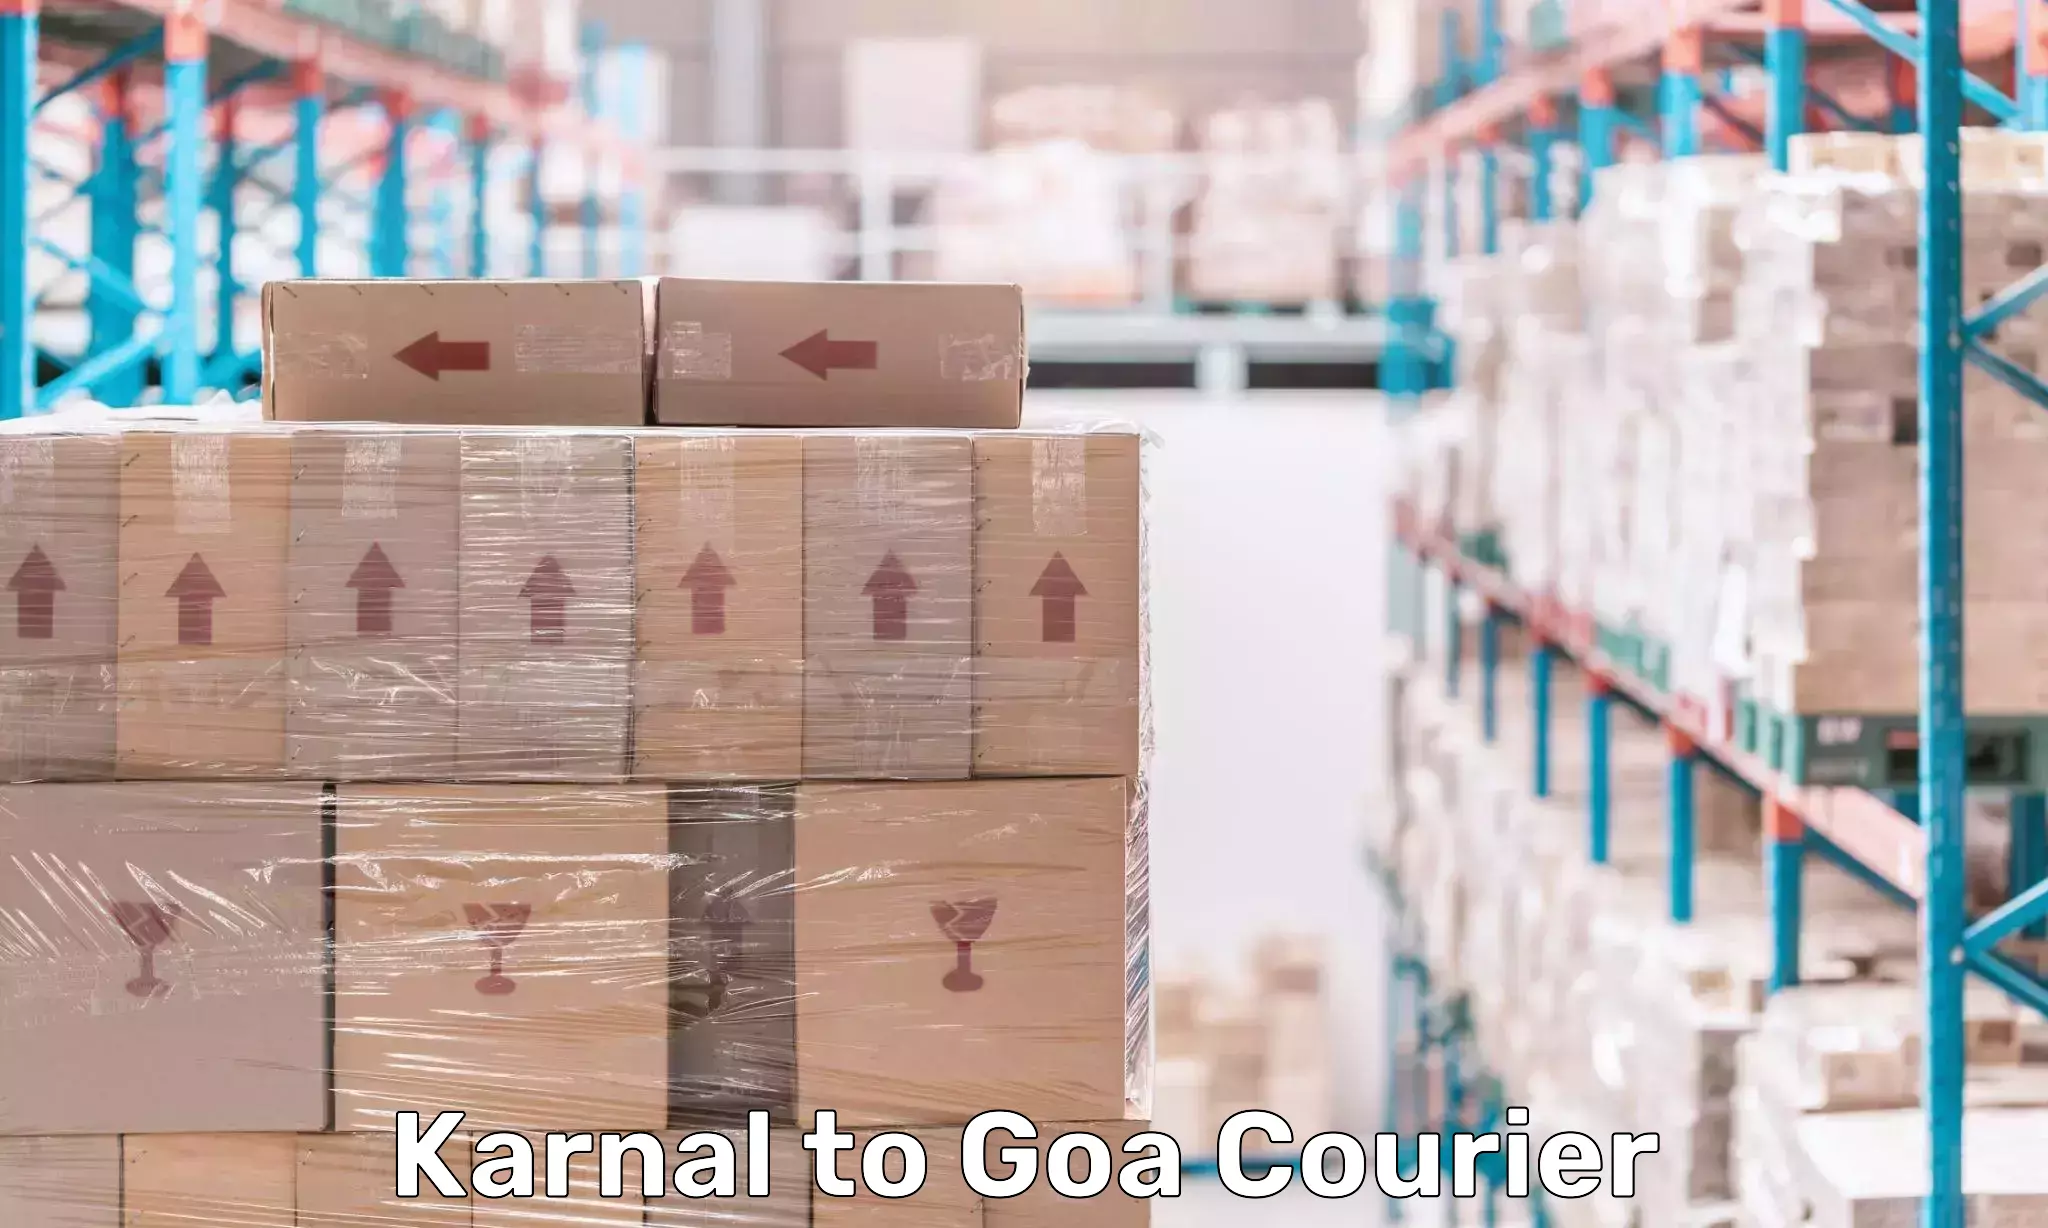 24-hour courier services Karnal to Vasco da Gama